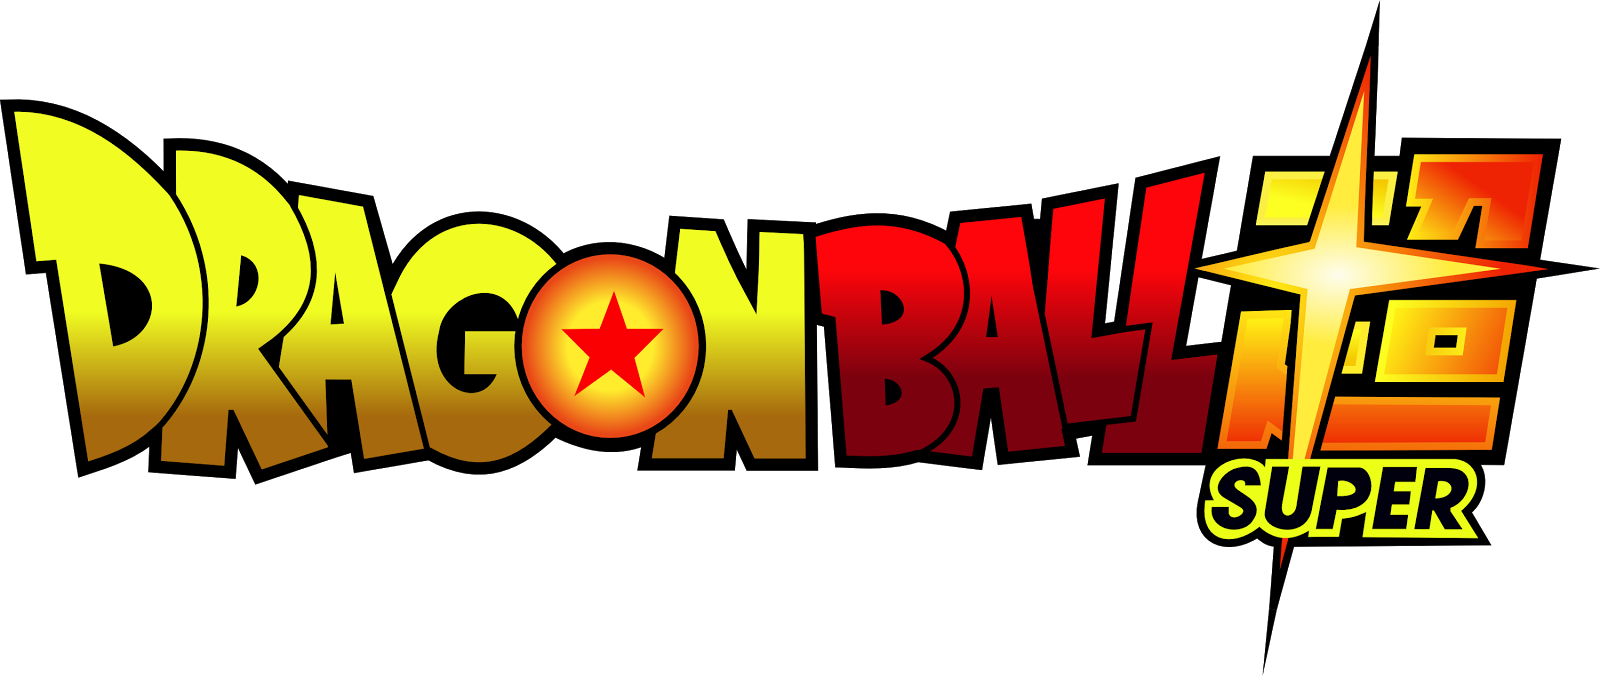 ANIVERSARIO DE DRAGON BALL SUPER | DRAGON BALL SUPER ...